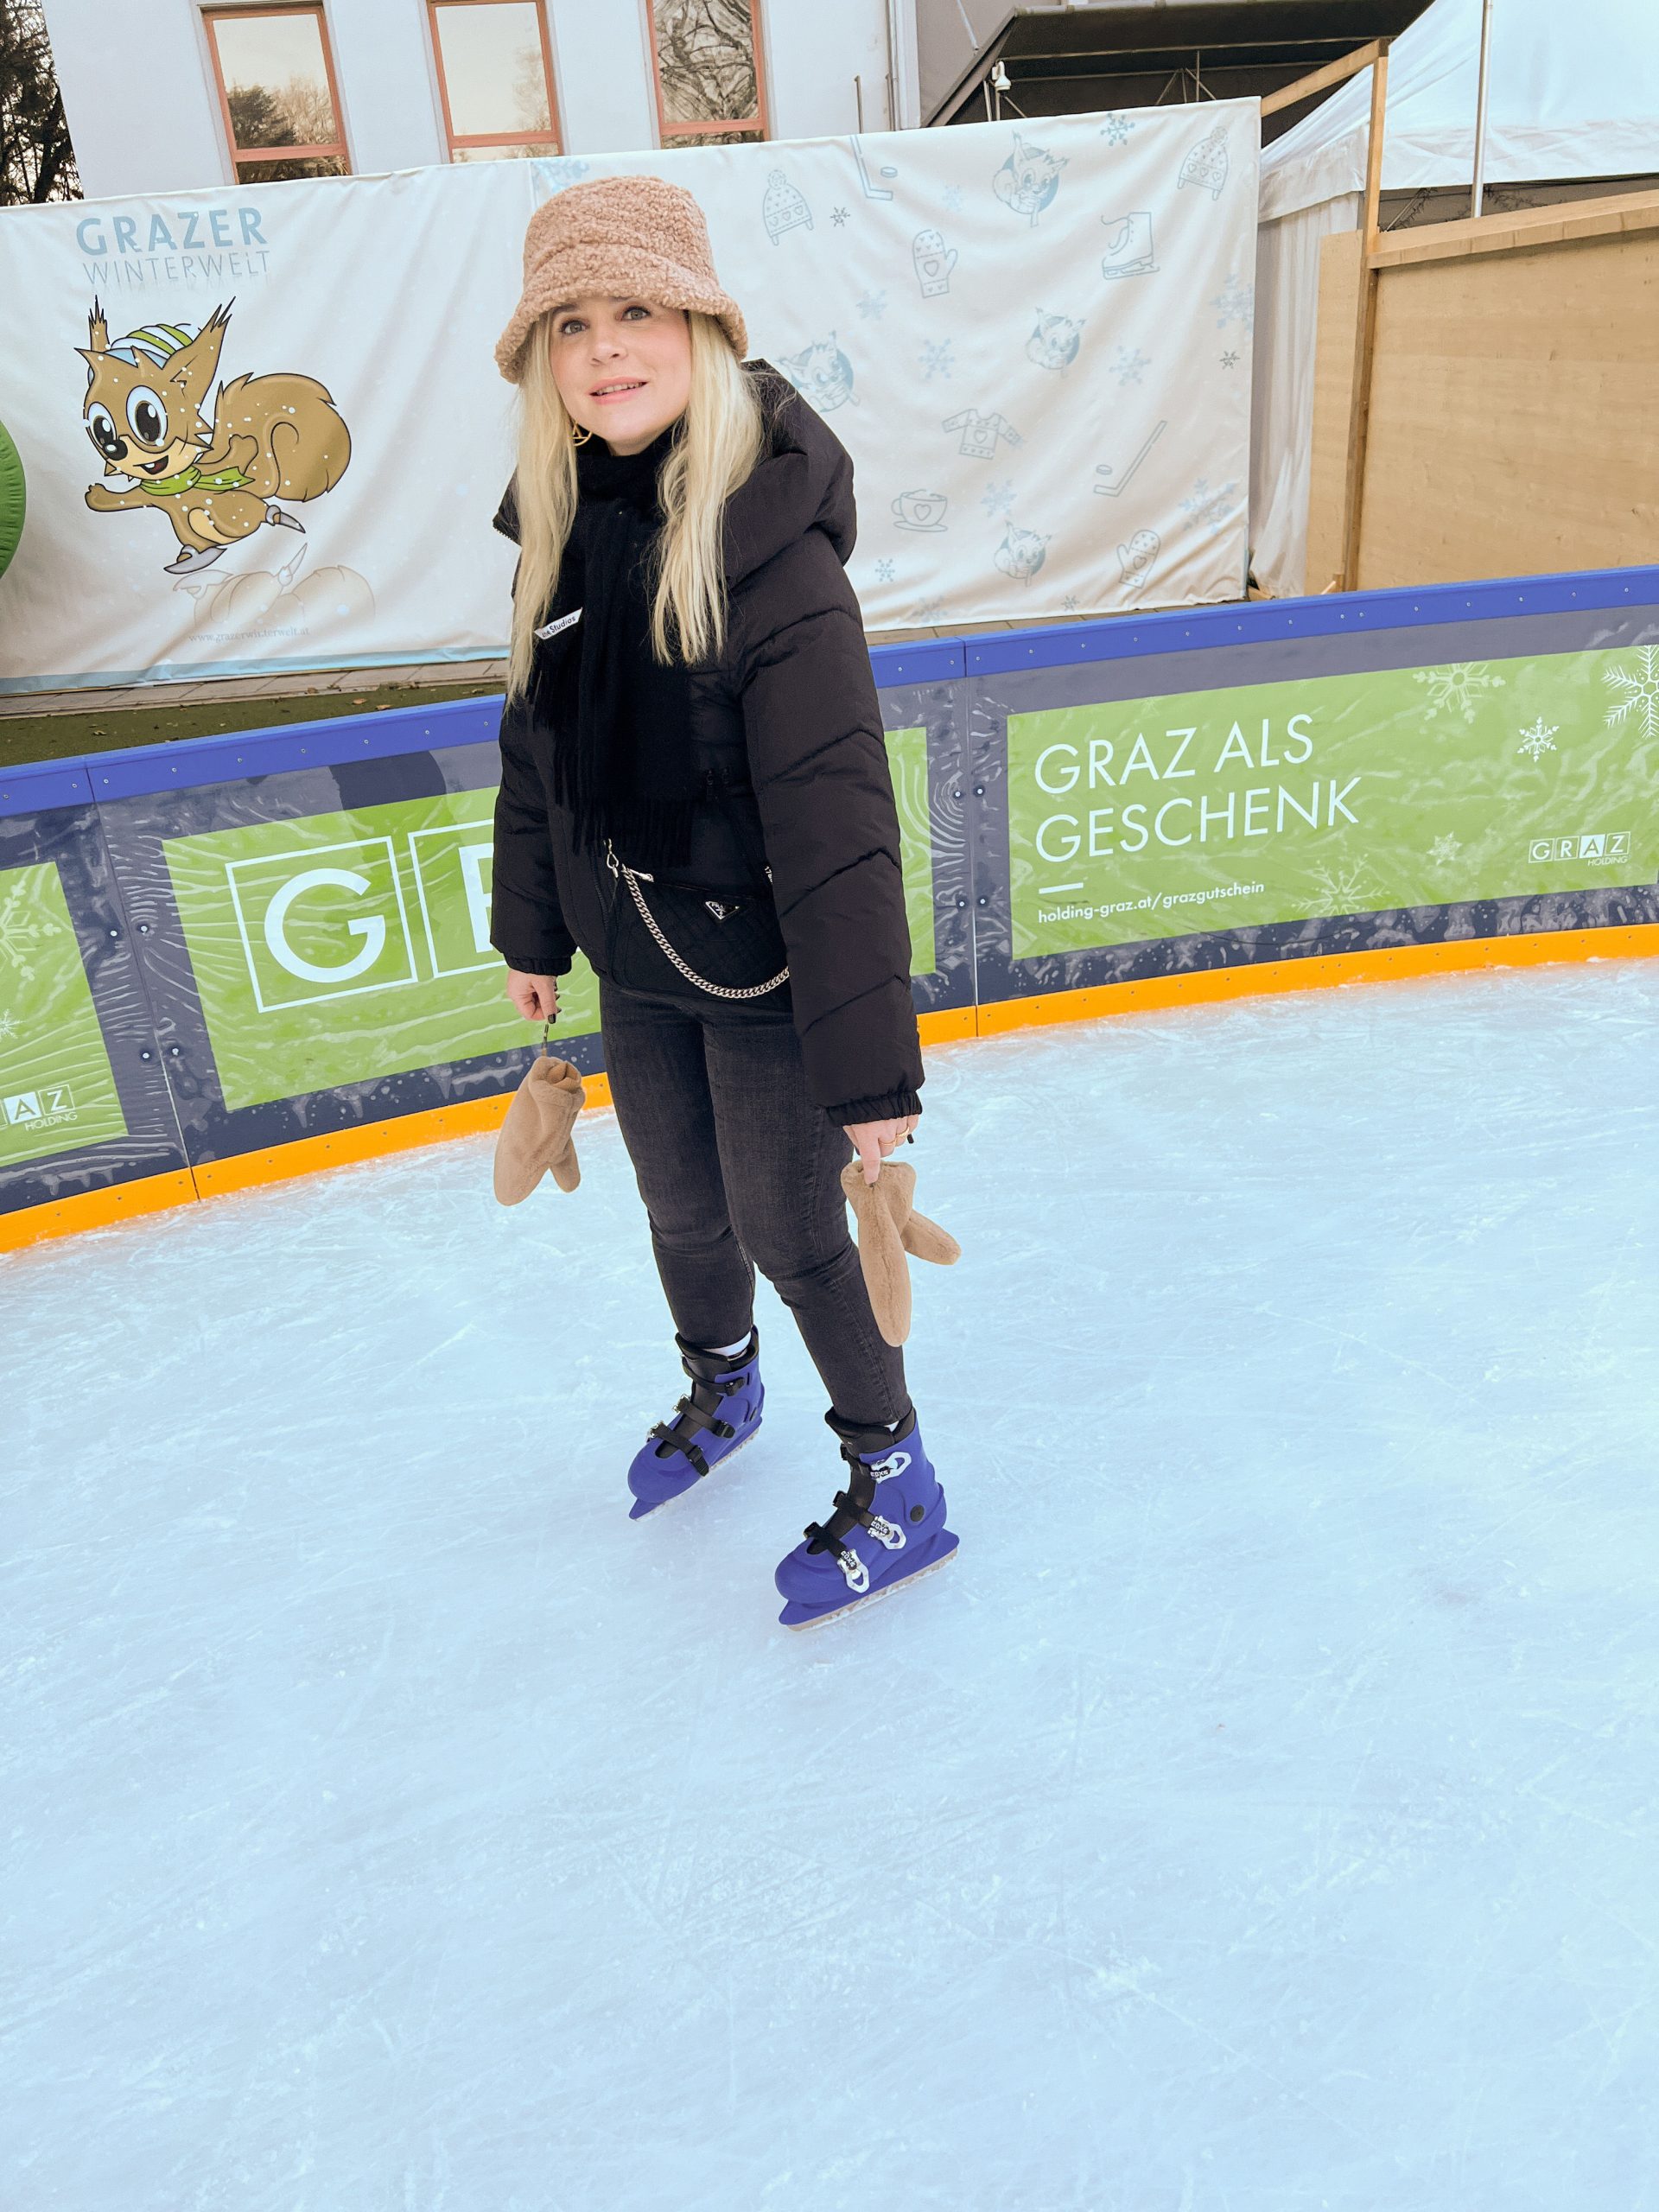 junge Frau mit schwarzer Jacke, schwarzem Schal und beigen Handschuhen und Mütze sowie blauen Eislaufschuhen am Eislaufplatz der Grazer Winterwelt